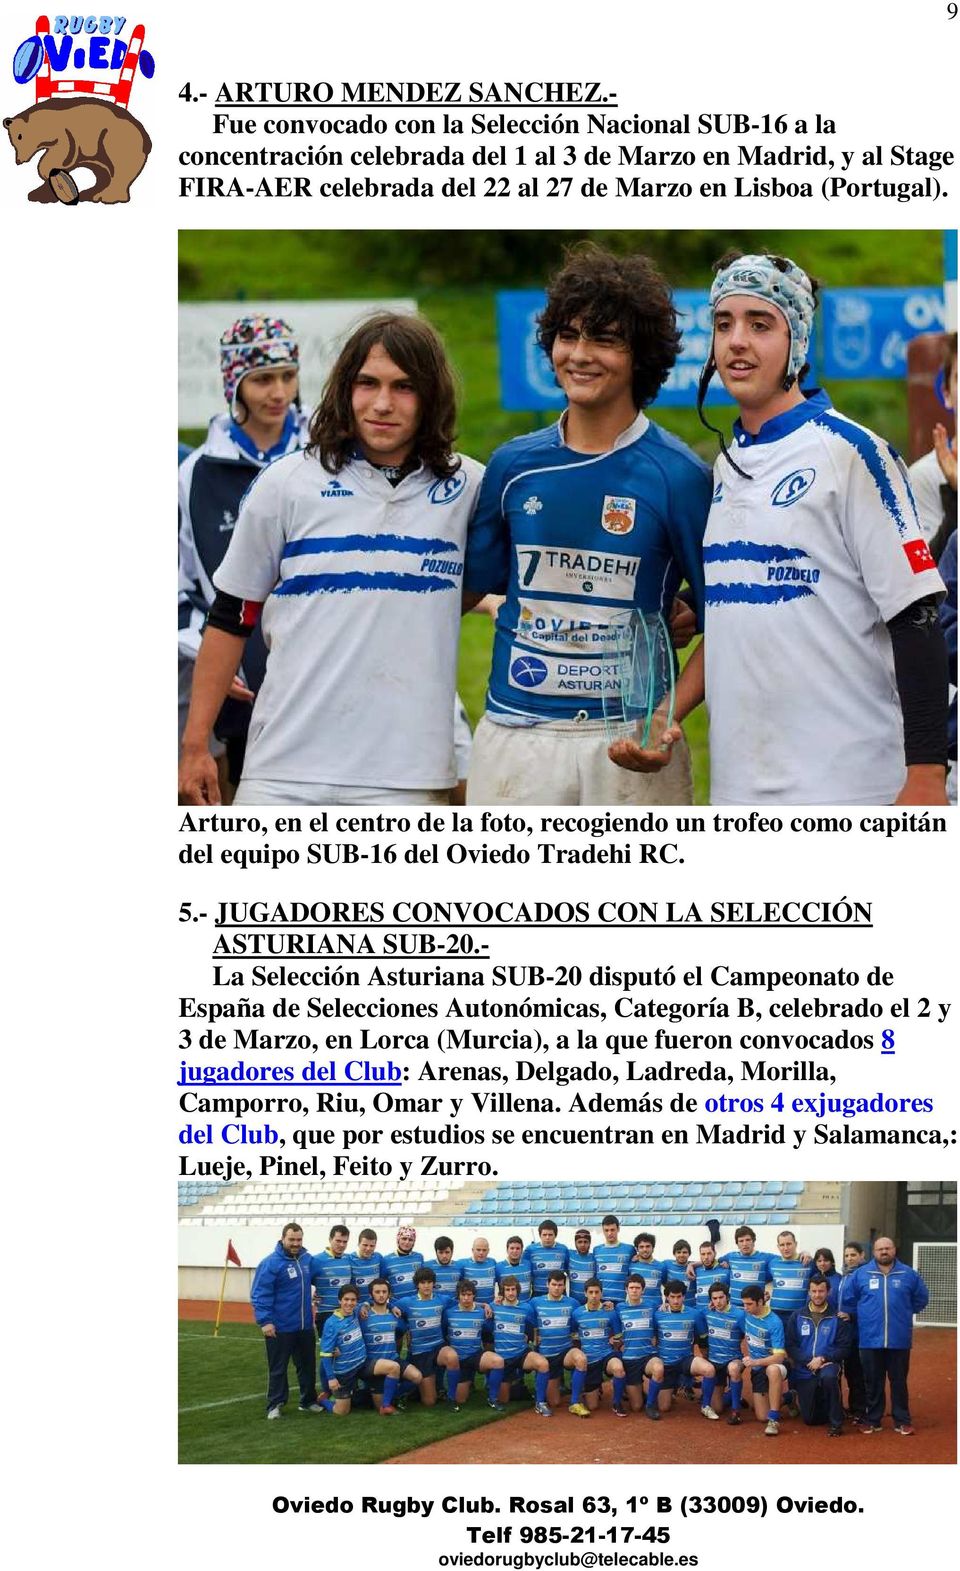 Arturo, en el centro de la foto, recogiendo un trofeo como capitán del equipo SUB-16 del Oviedo Tradehi RC. 5.- JUGADORES CONVOCADOS CON LA SELECCIÓN ASTURIANA SUB-20.